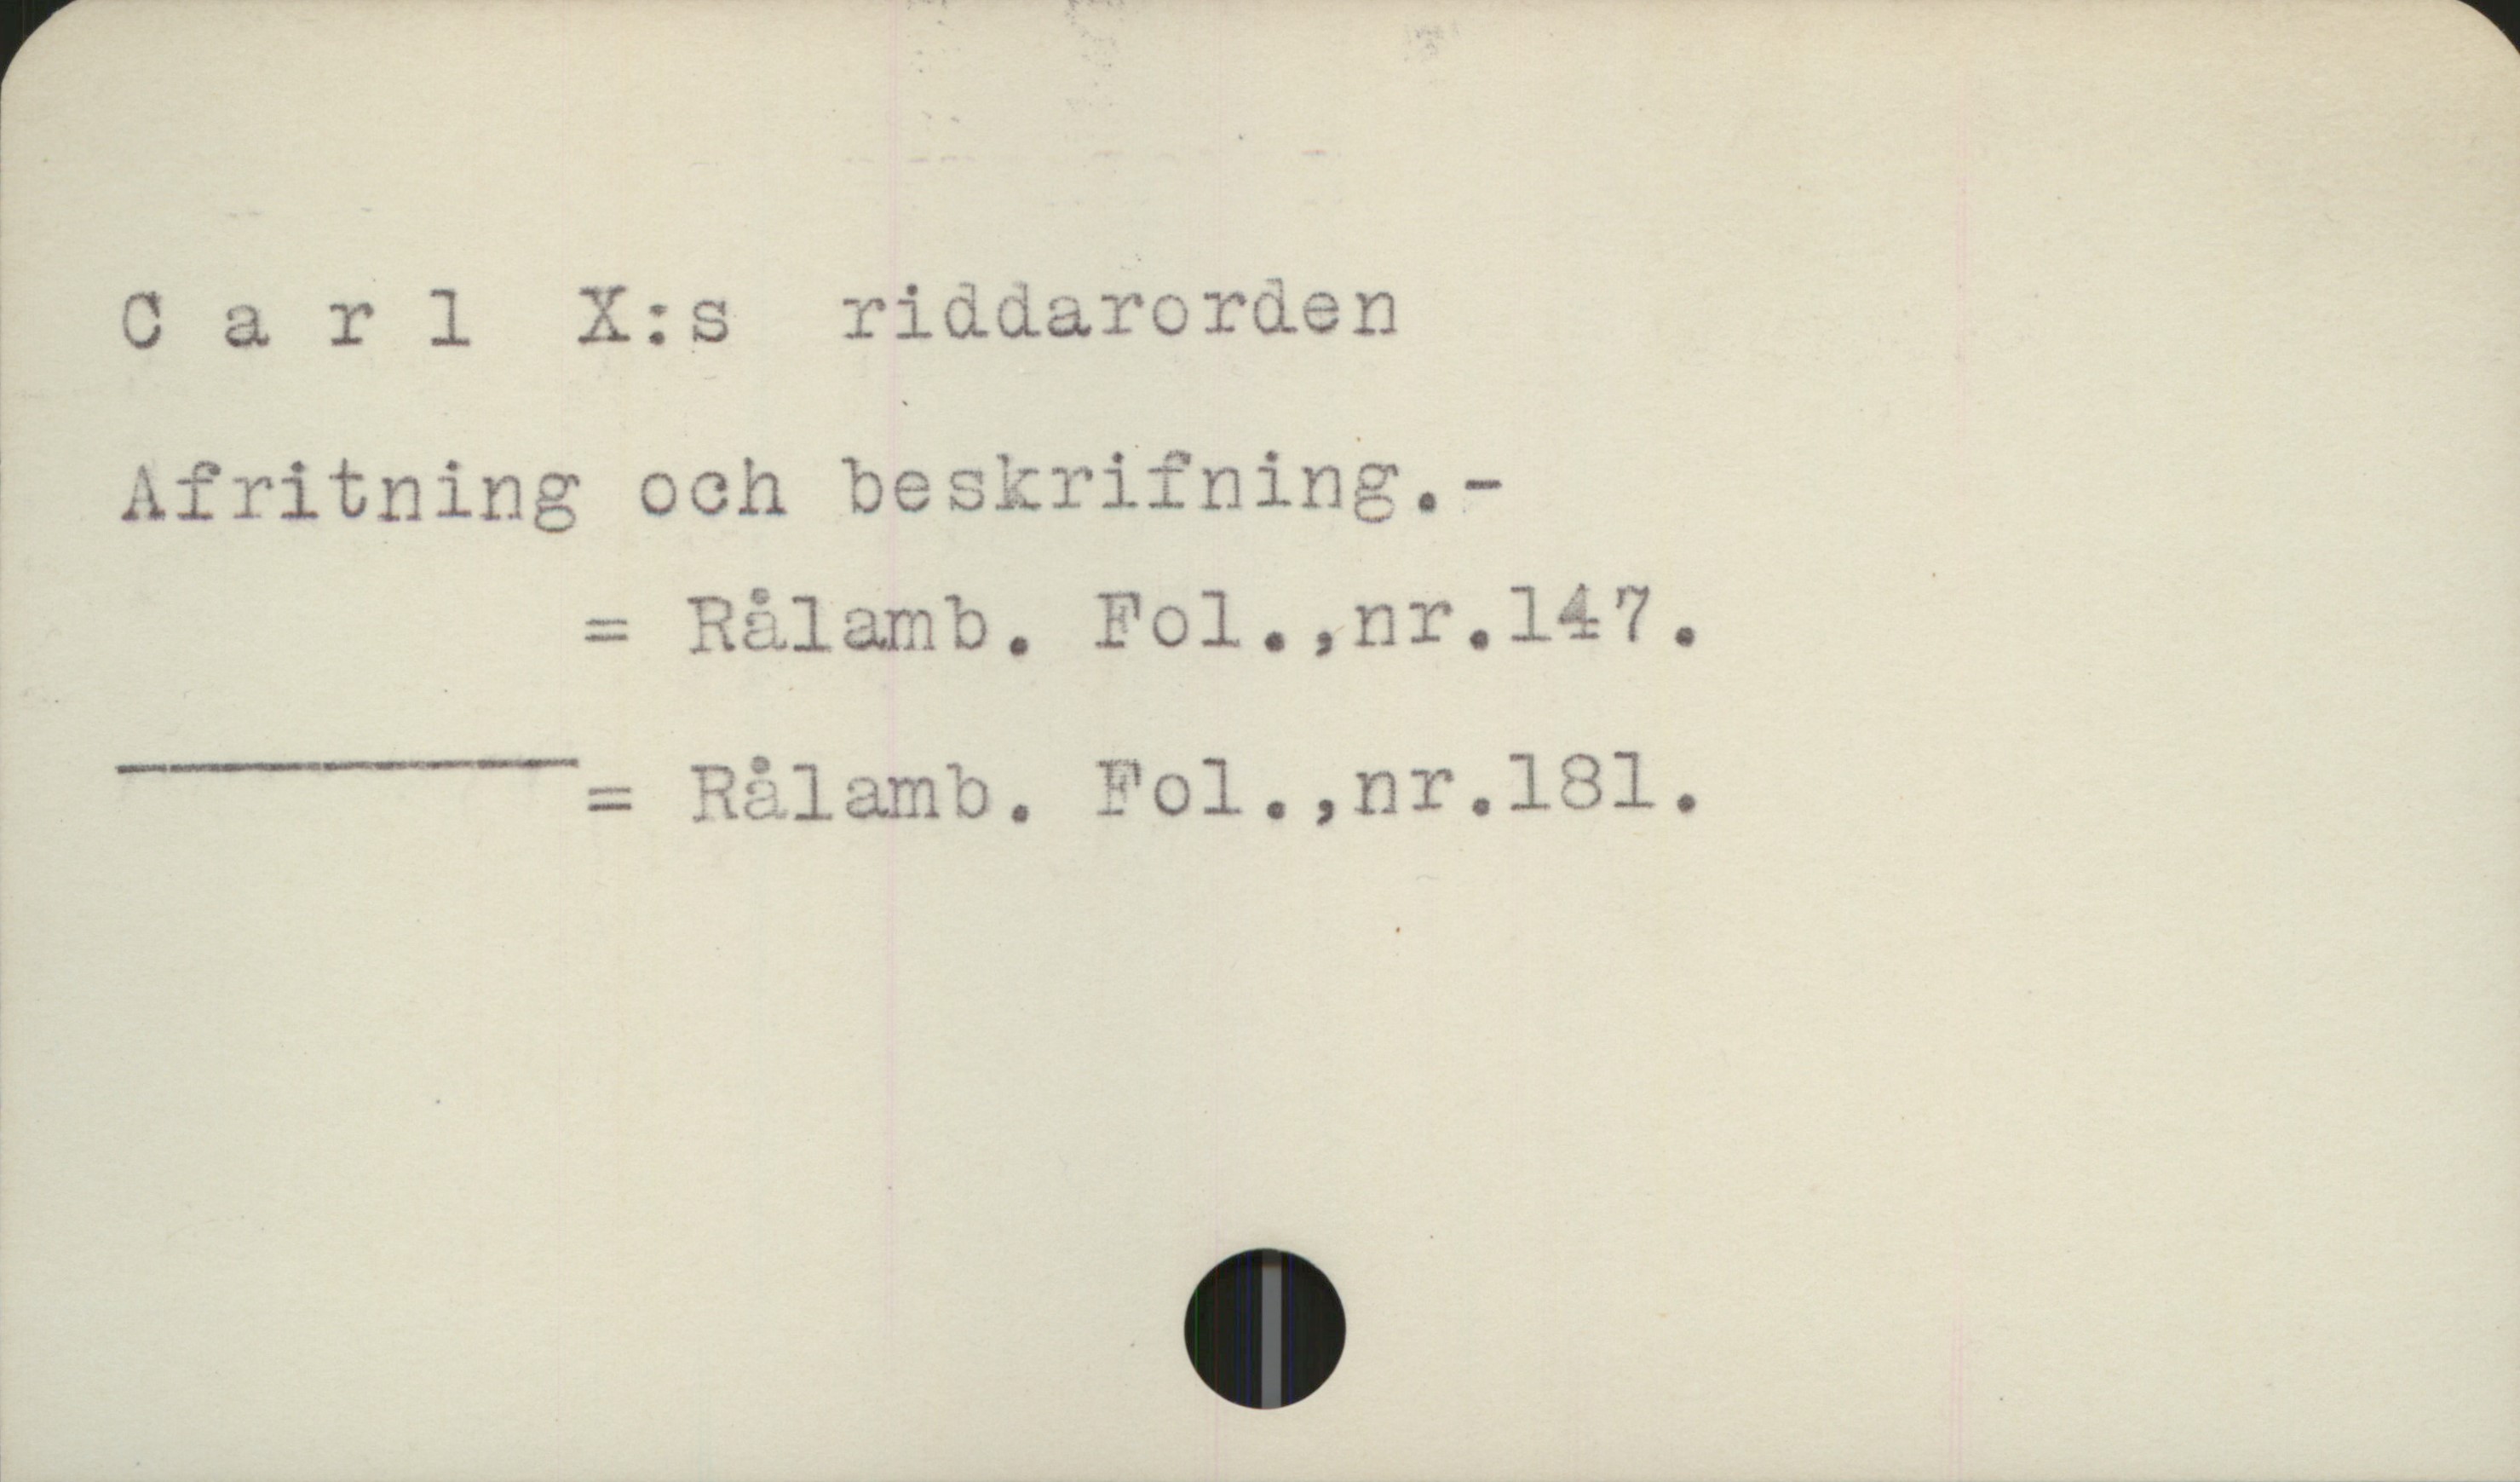  Carl X:s riddarorden
Afritning och beskrifning. -
- Rålamb.
= RZlamb. Fol.,nr.1l81l.

